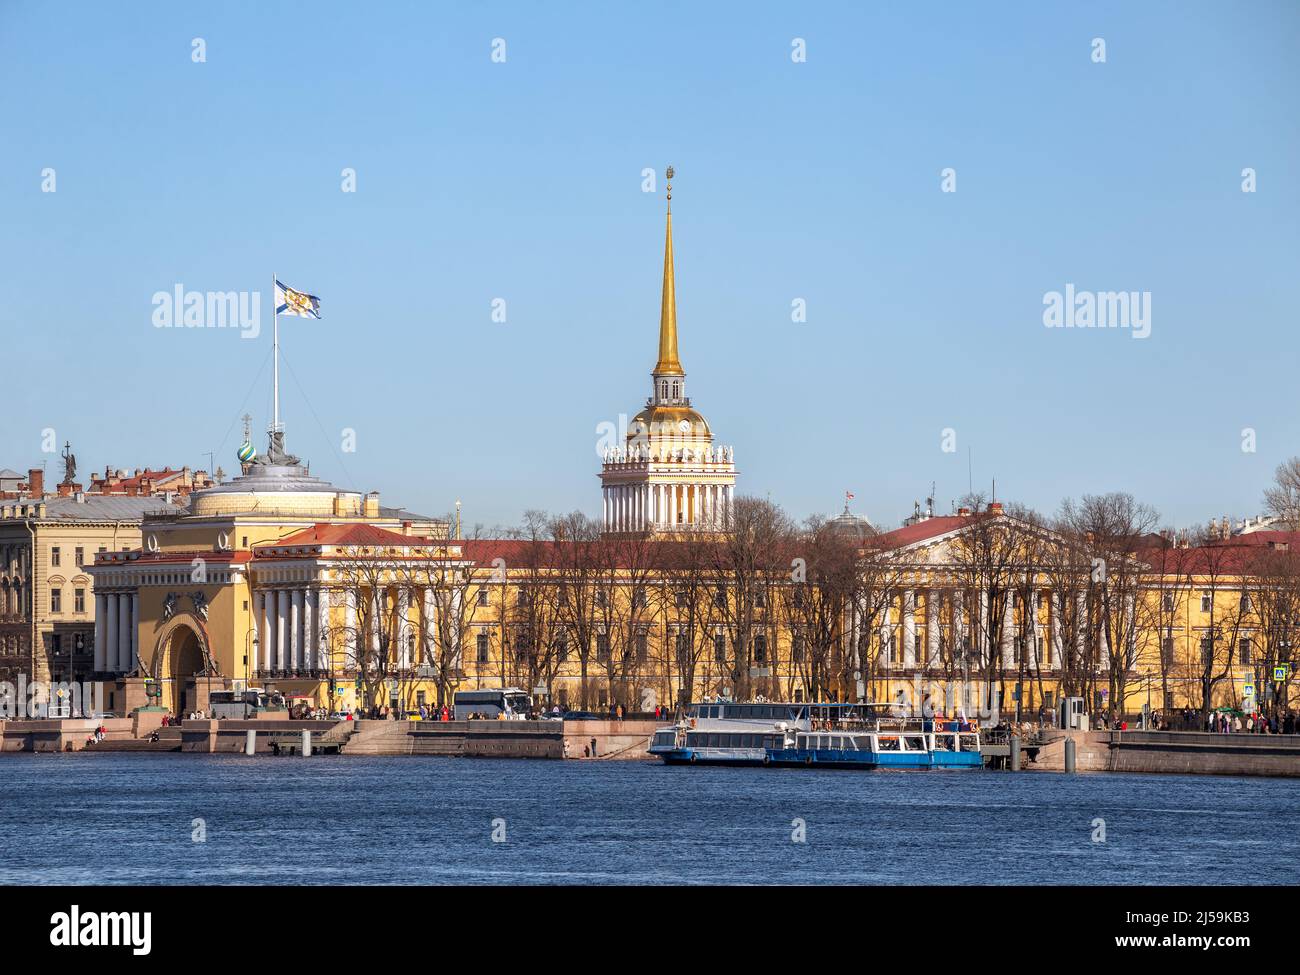 Admiralty-Gebäude auf dem Admiraltejskaja-Damm, St. Petersburg, Russland Stockfoto